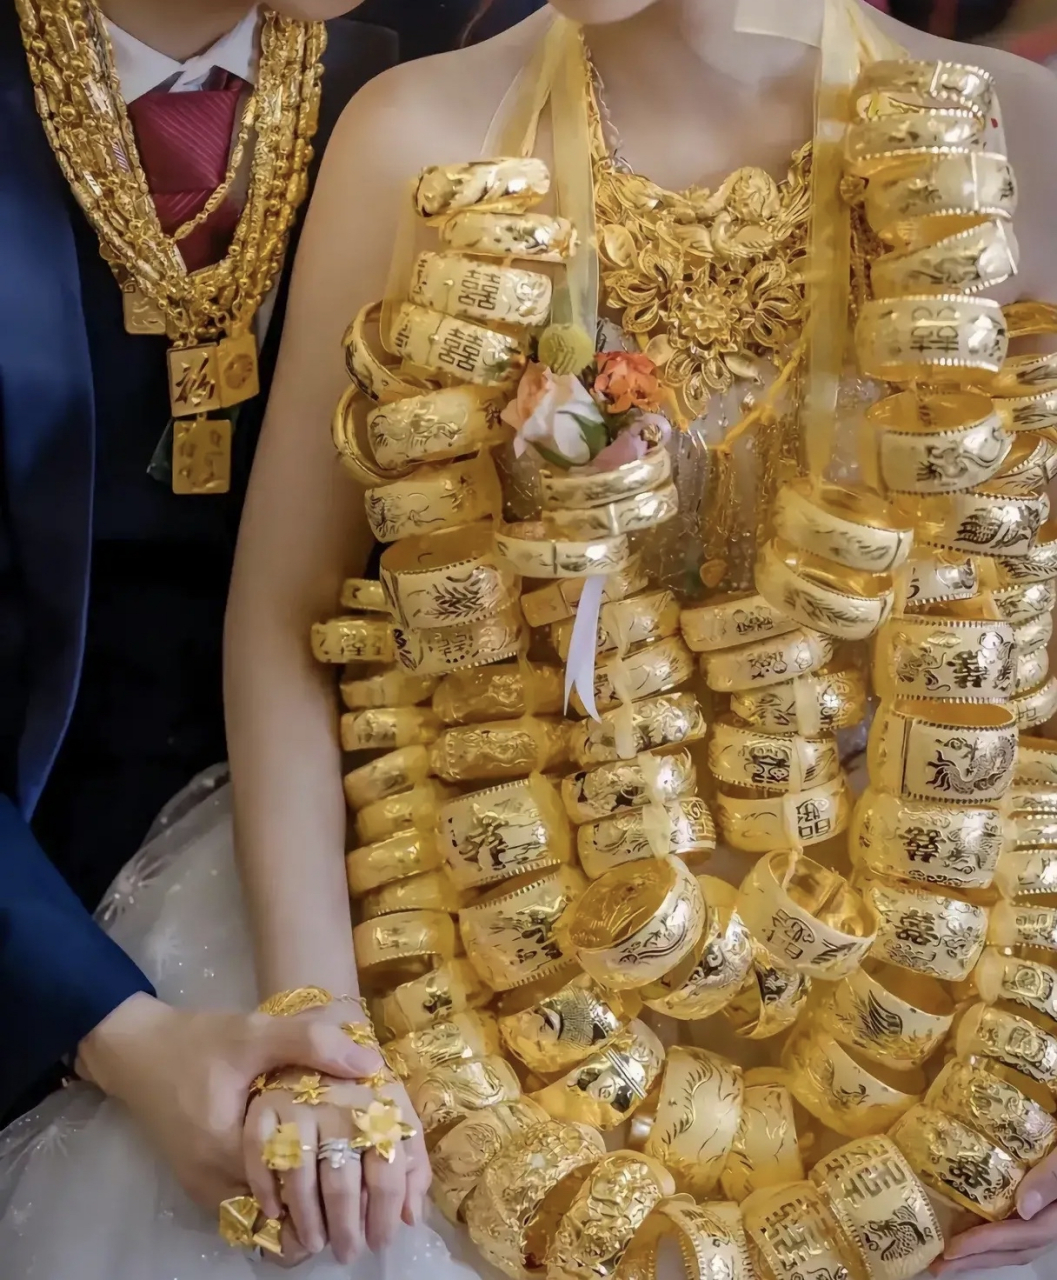 新娘身上戴着这么多的金饰品,少说也有二十斤重以上,如果应酬来宾时